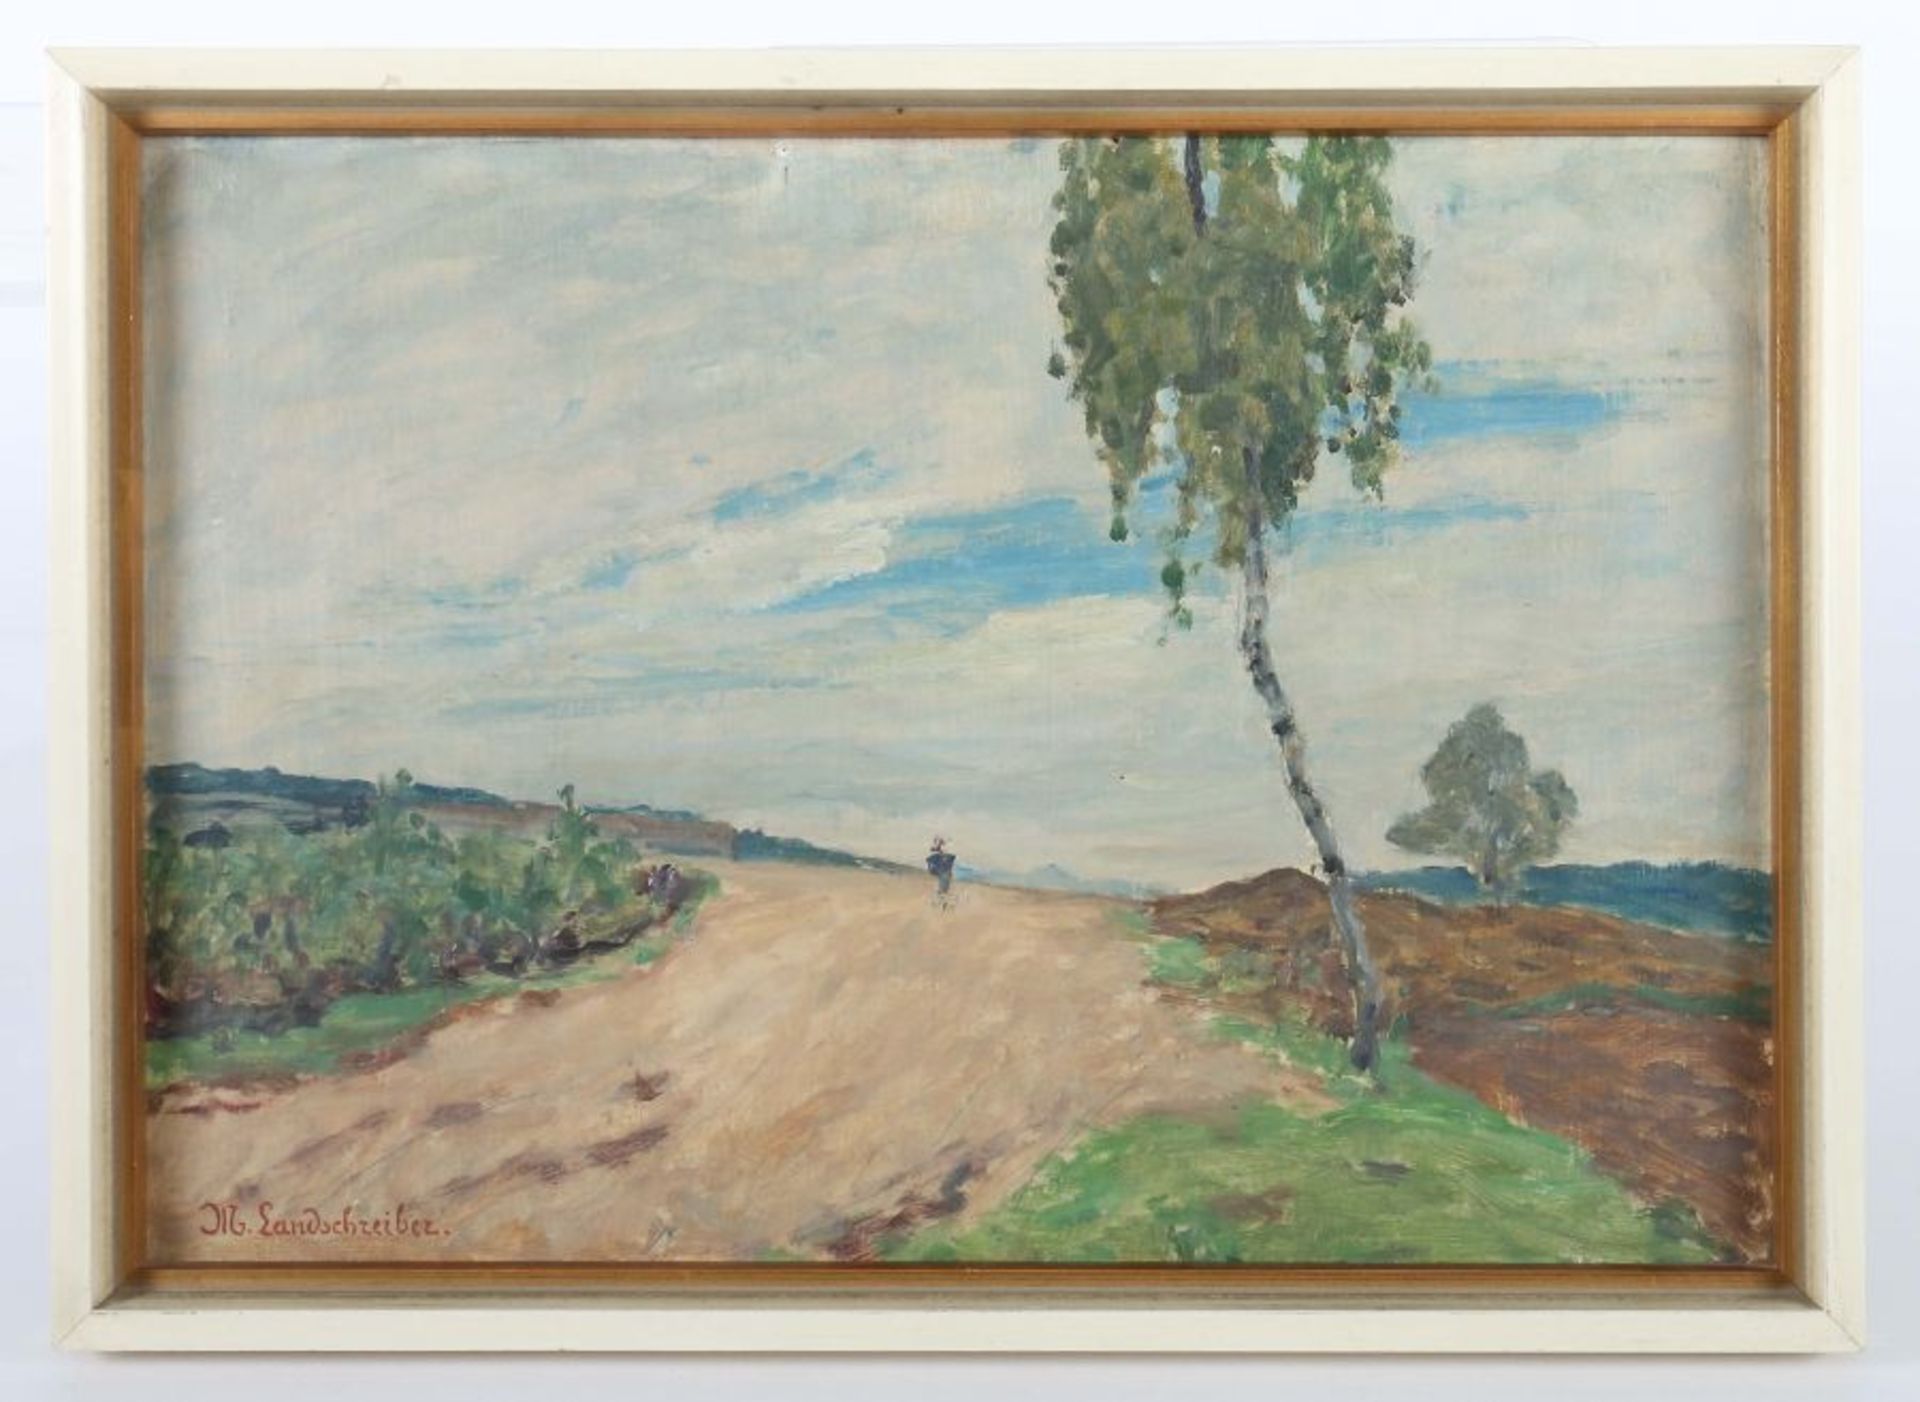 Landschreiber, Max 1880 - 1961, deutscher Maler. "Feldweg", Blick auf die weite hügelige Landschaft, - Bild 2 aus 3